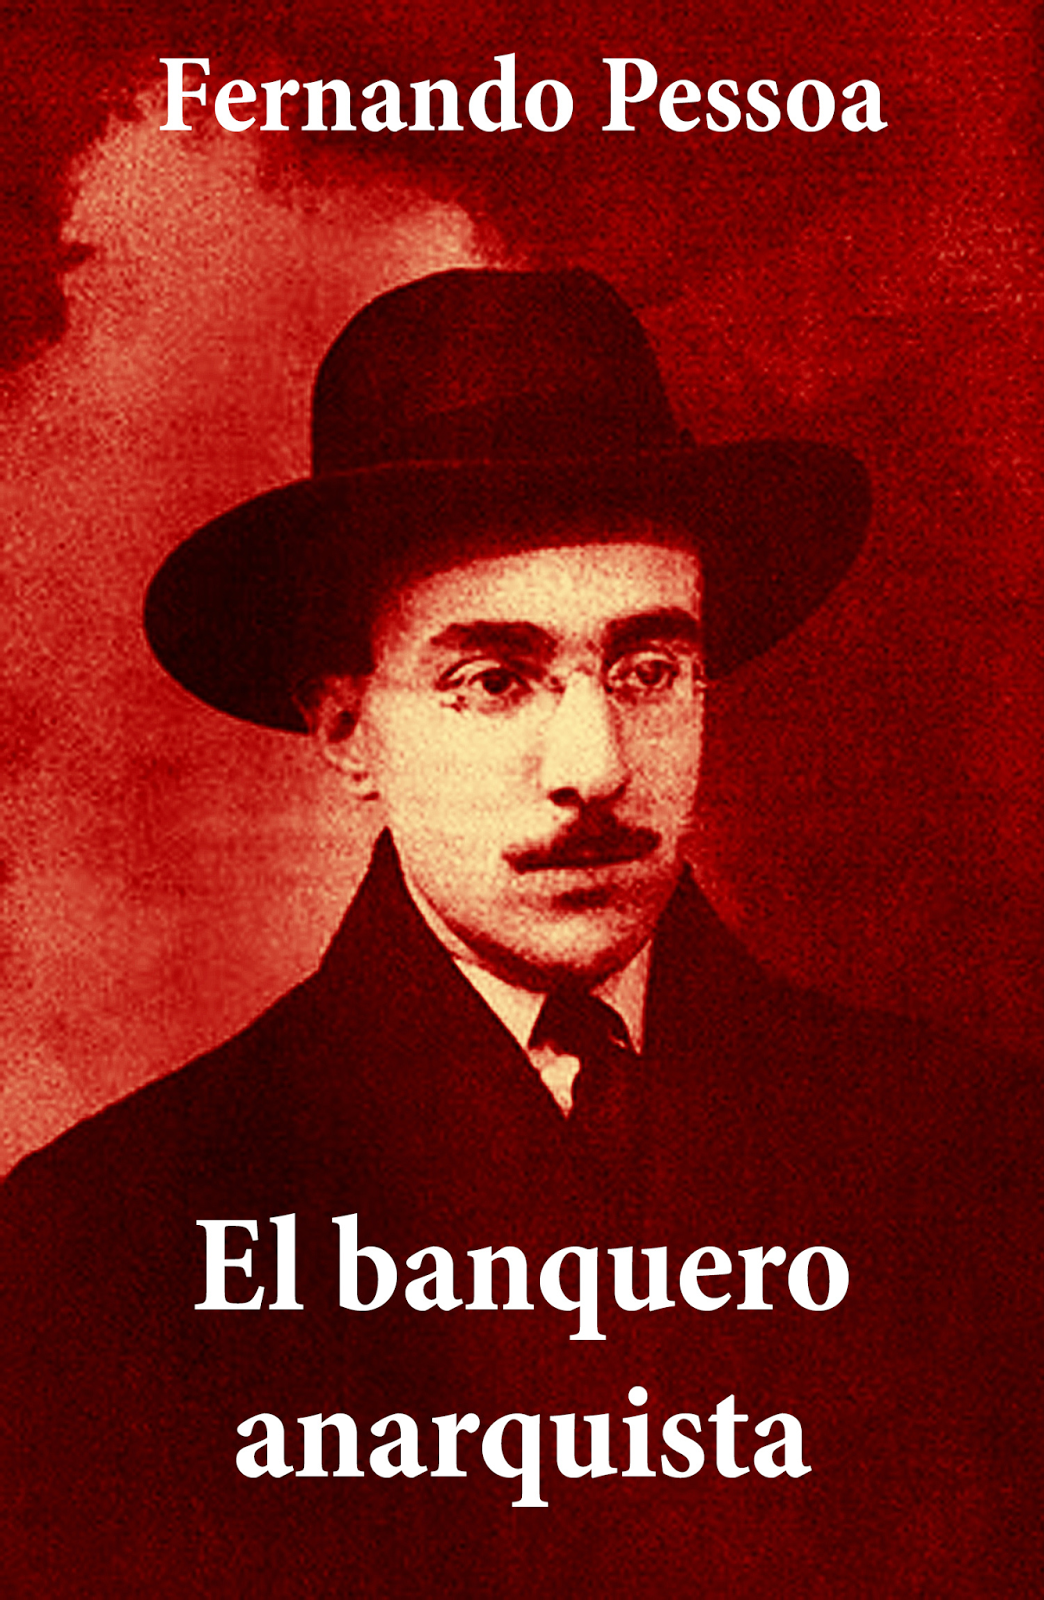 Portada del libro «El banquero anarquista», de Fernando Pessoa